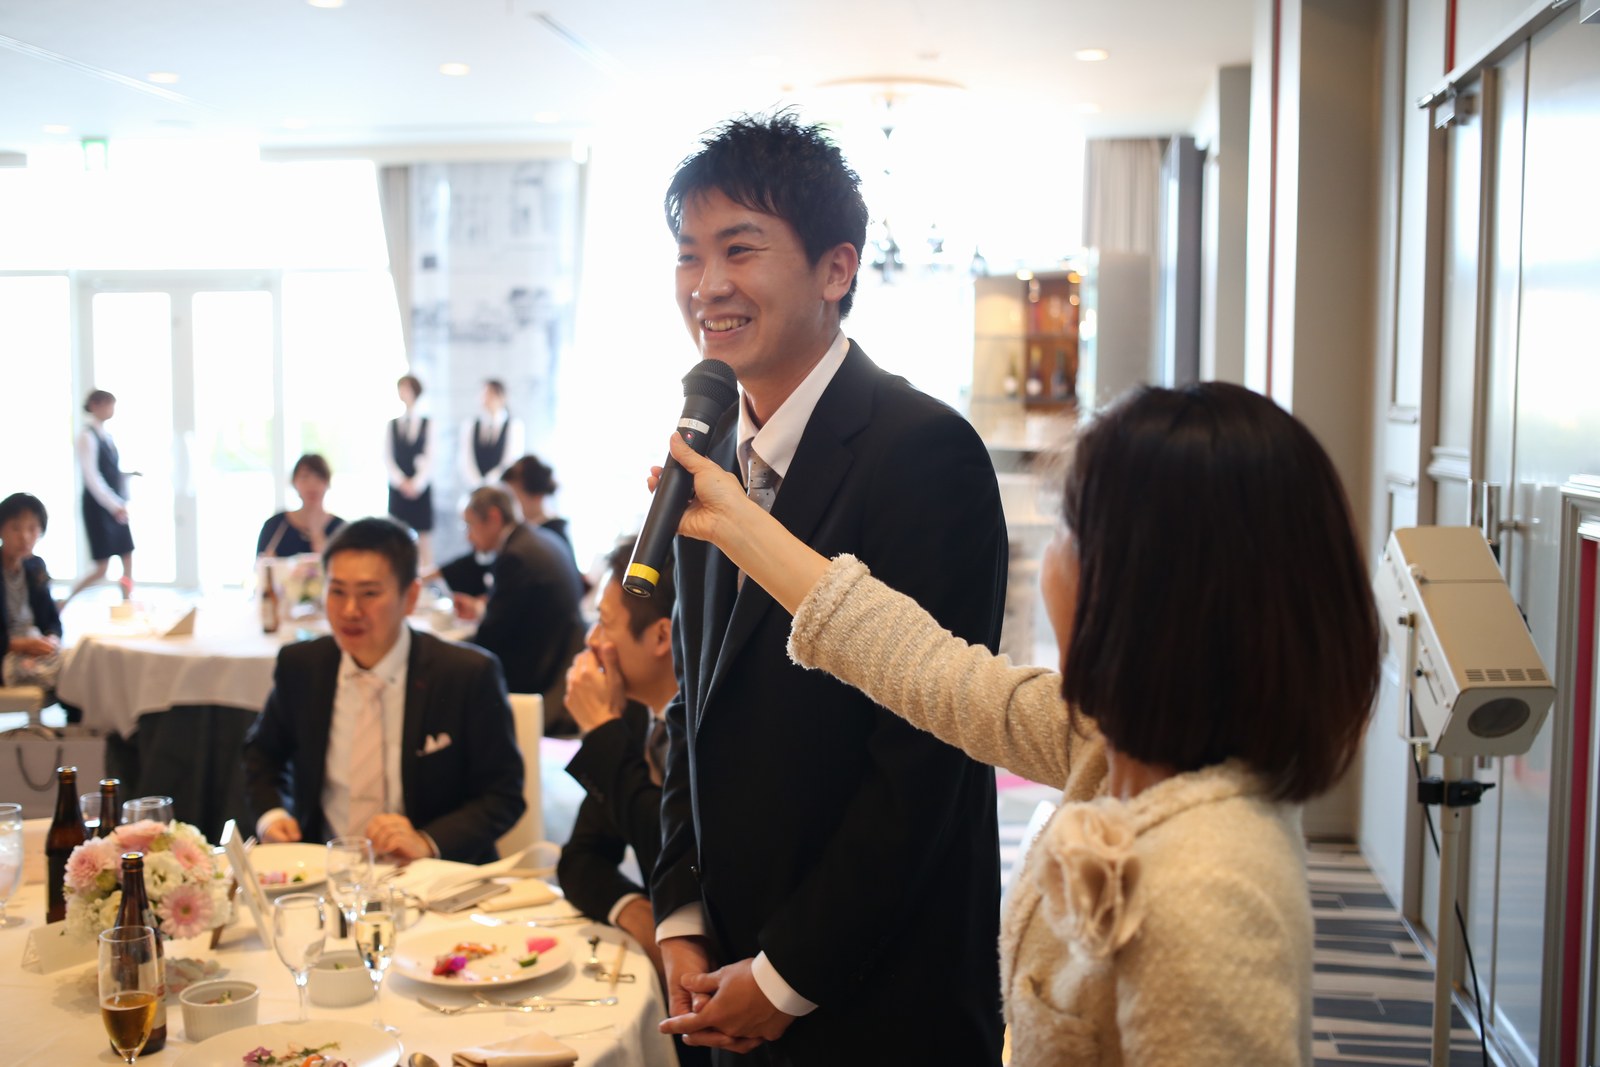 徳島市の結婚式場ブランアンジュのテーブルスピーチで話しているゲスト